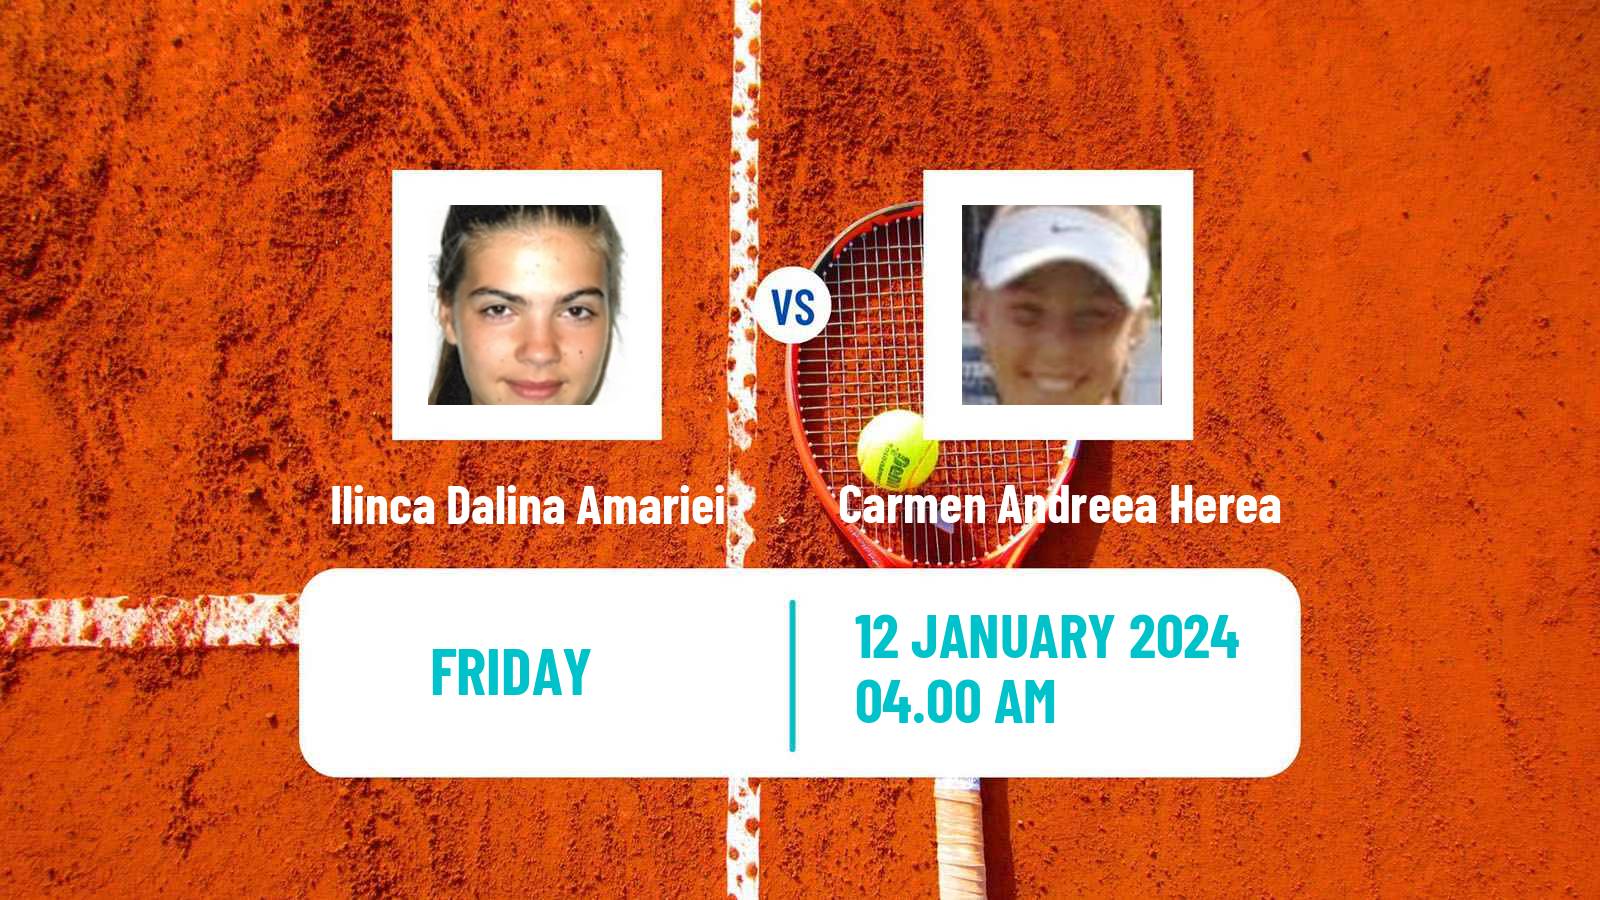 Tennis ITF W35 Antalya Women Ilinca Dalina Amariei - Carmen Andreea Herea